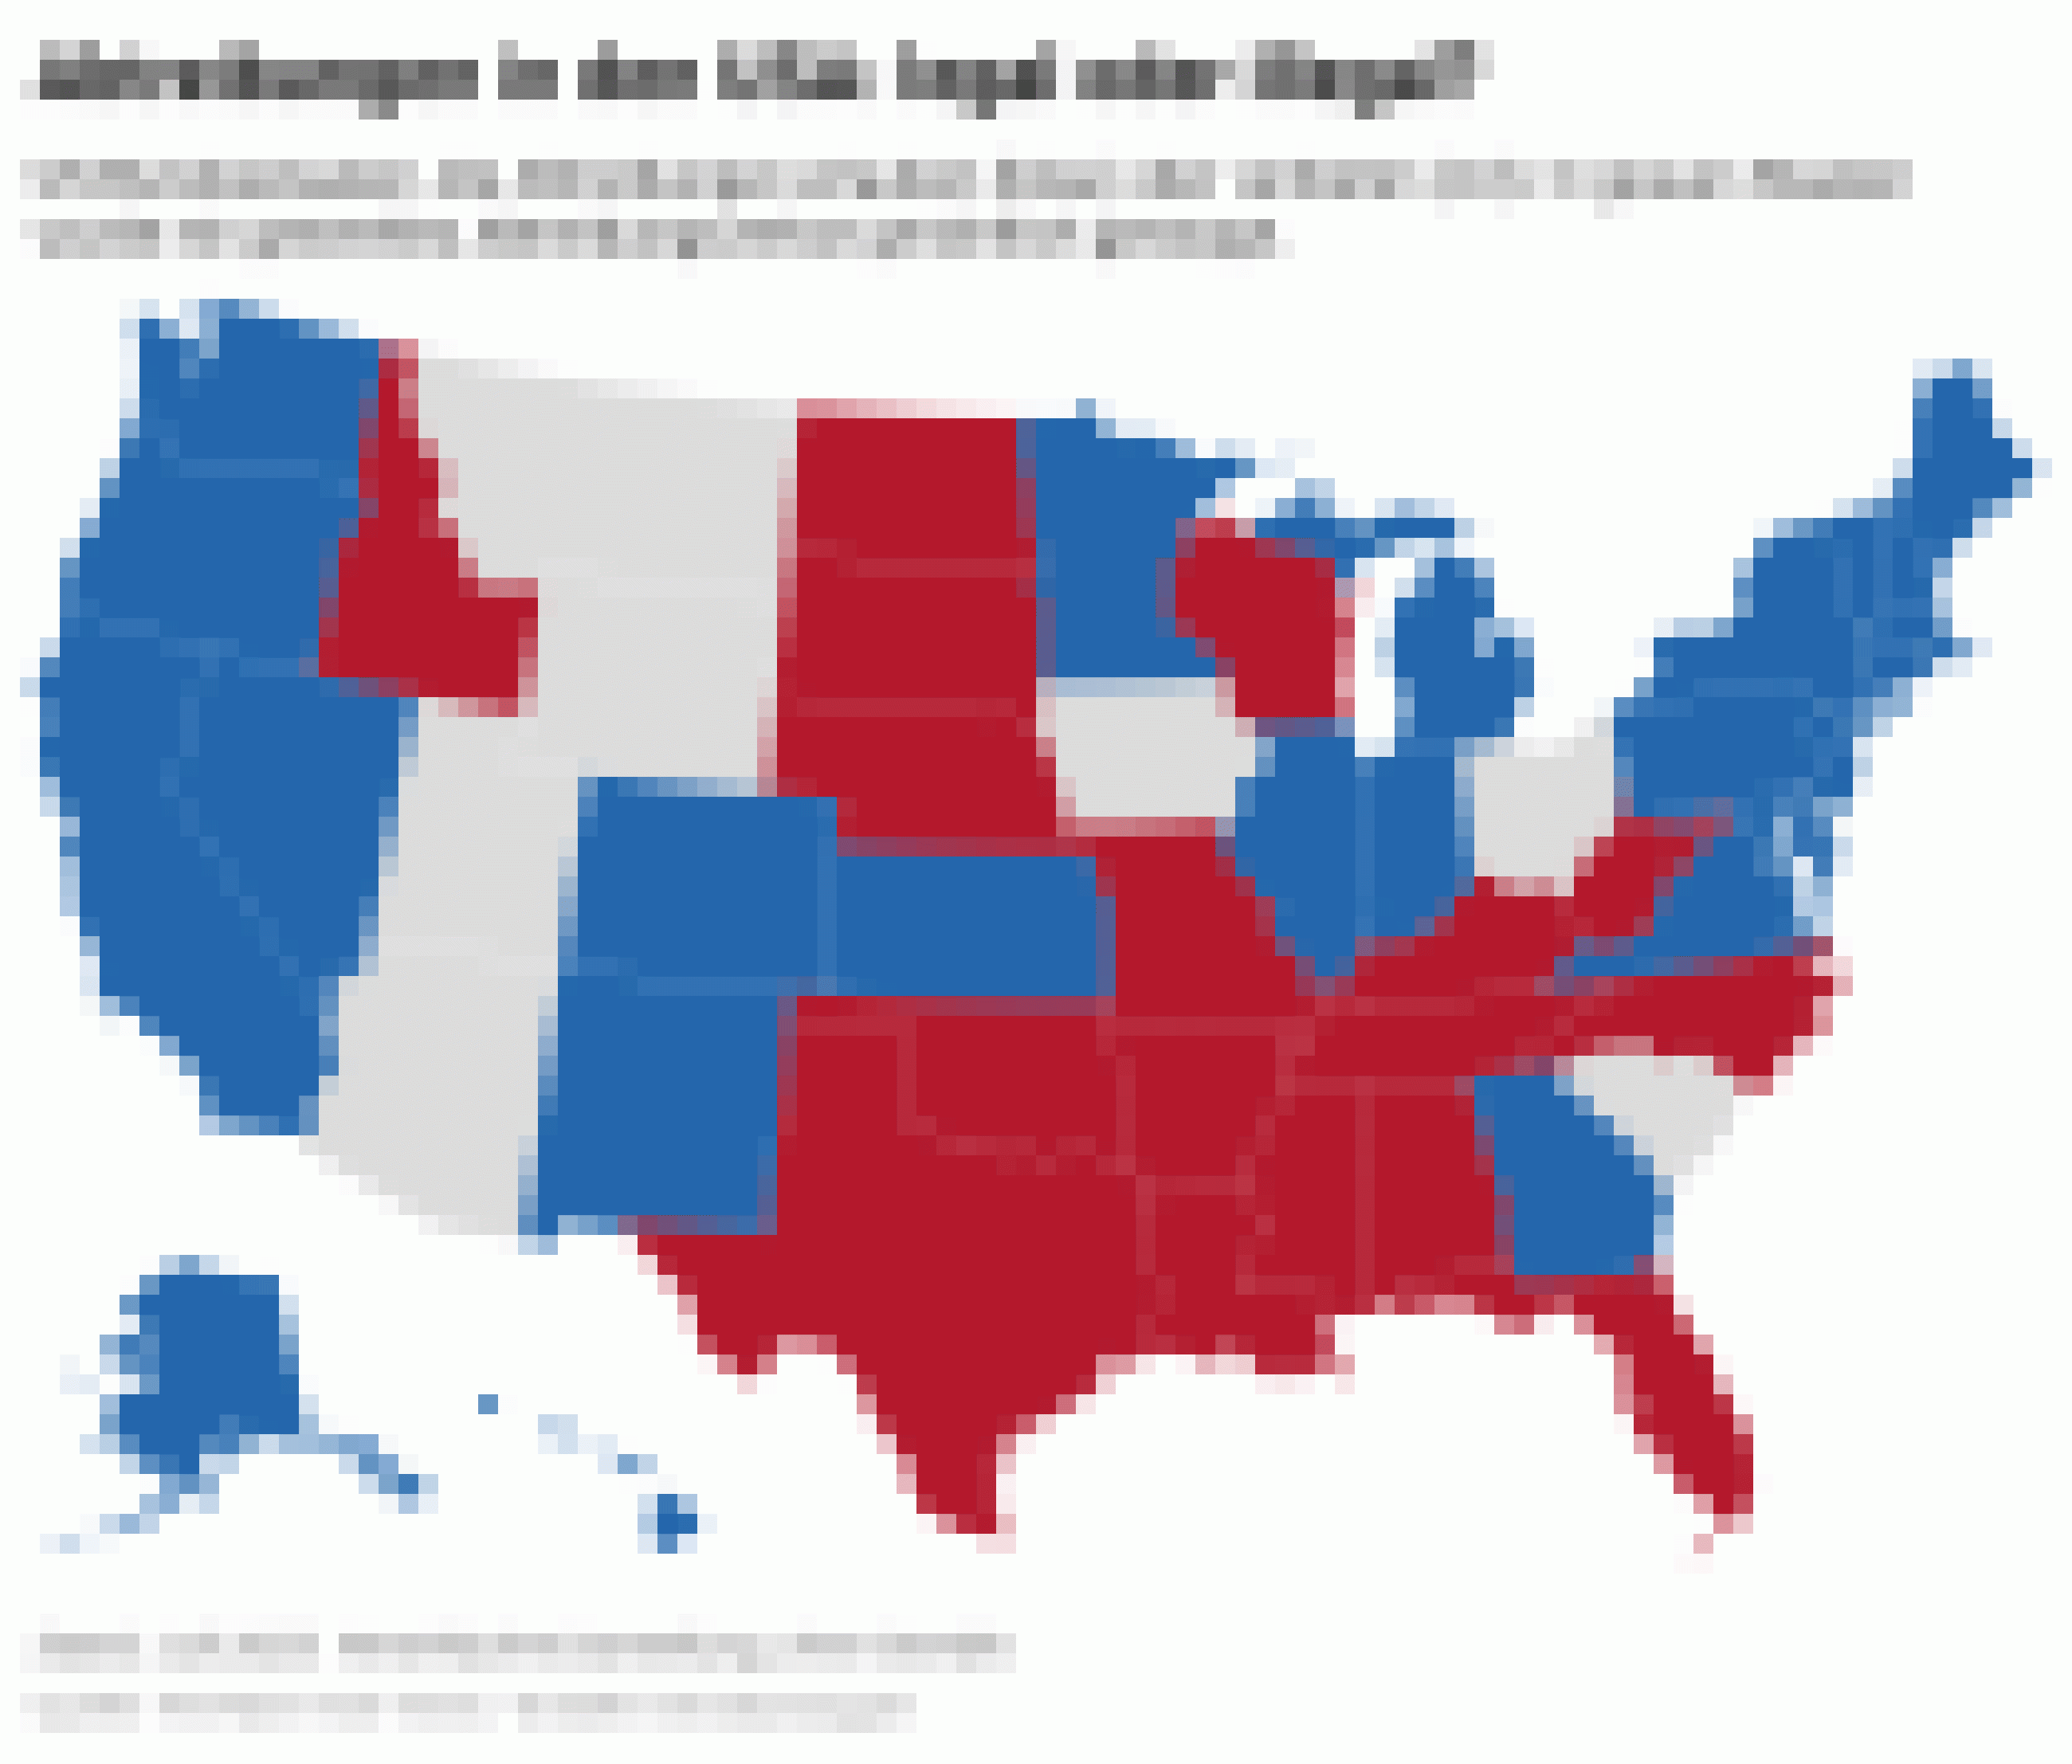 Landkarte zeigt US-Bundesstaaten an, die Abtreibungen erlauben oder verbieten